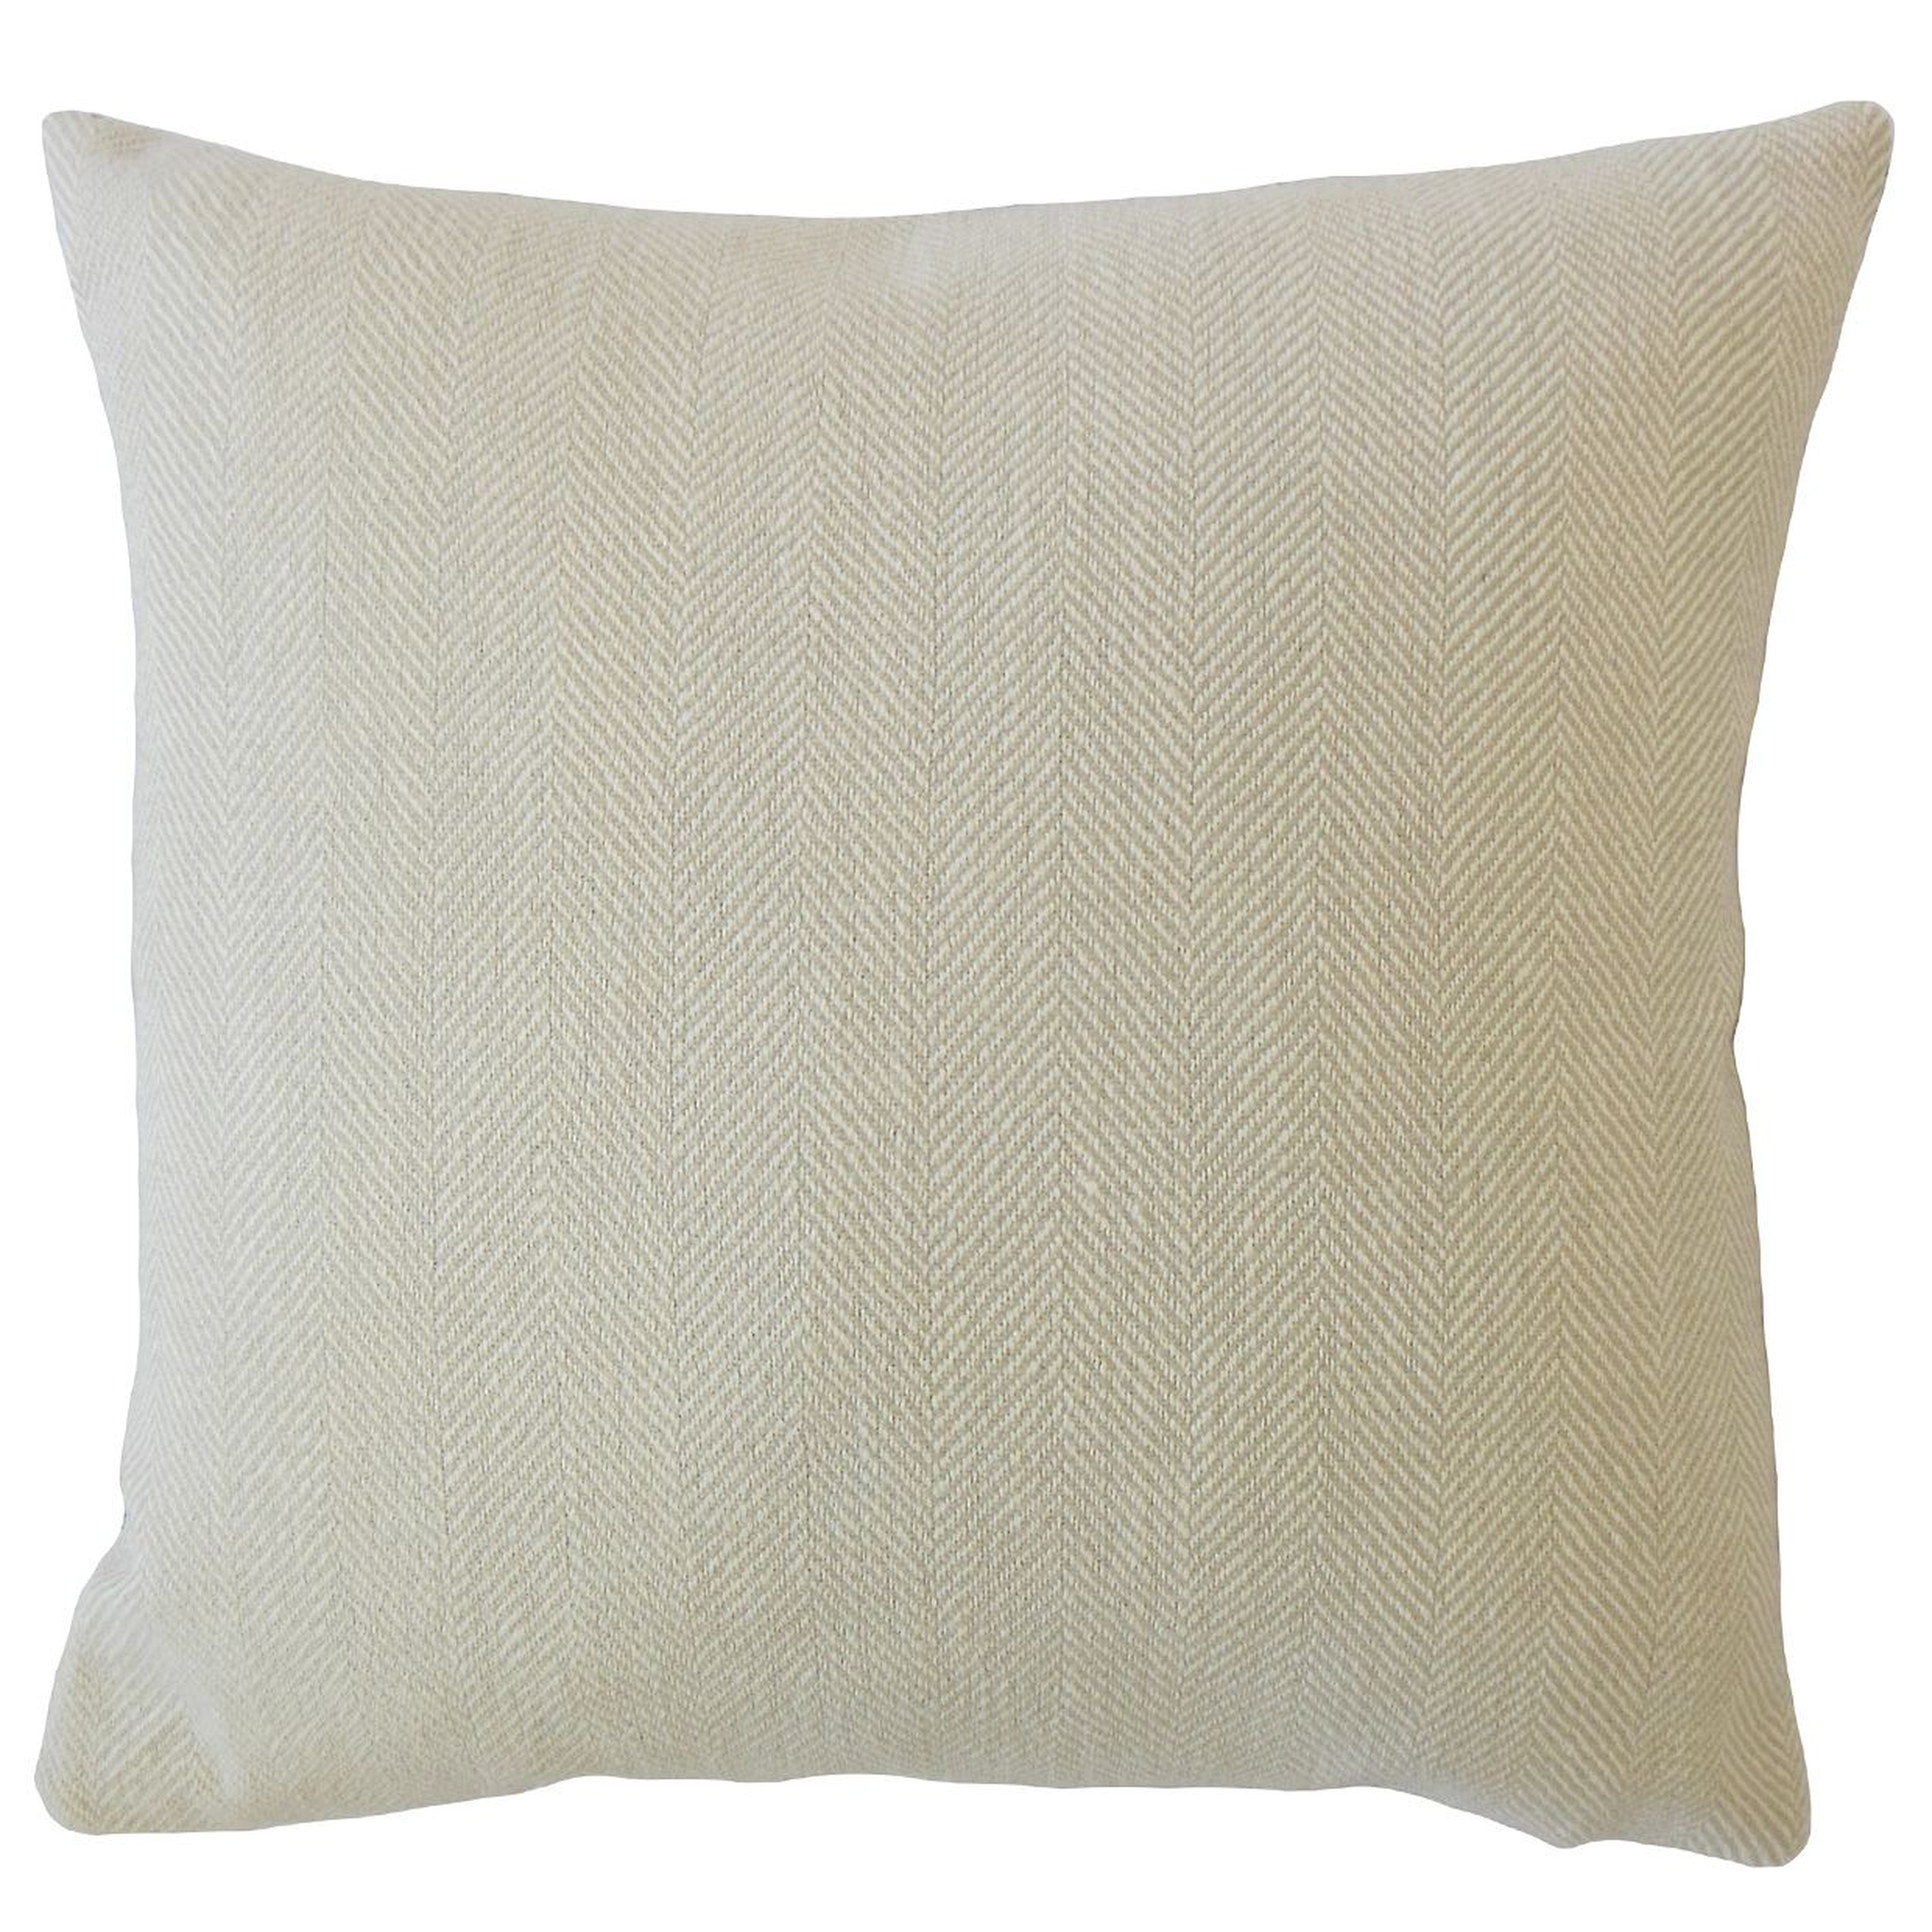 Linen Herringbone Pillow, Cement, 18" x 18" - Havenly Essentials